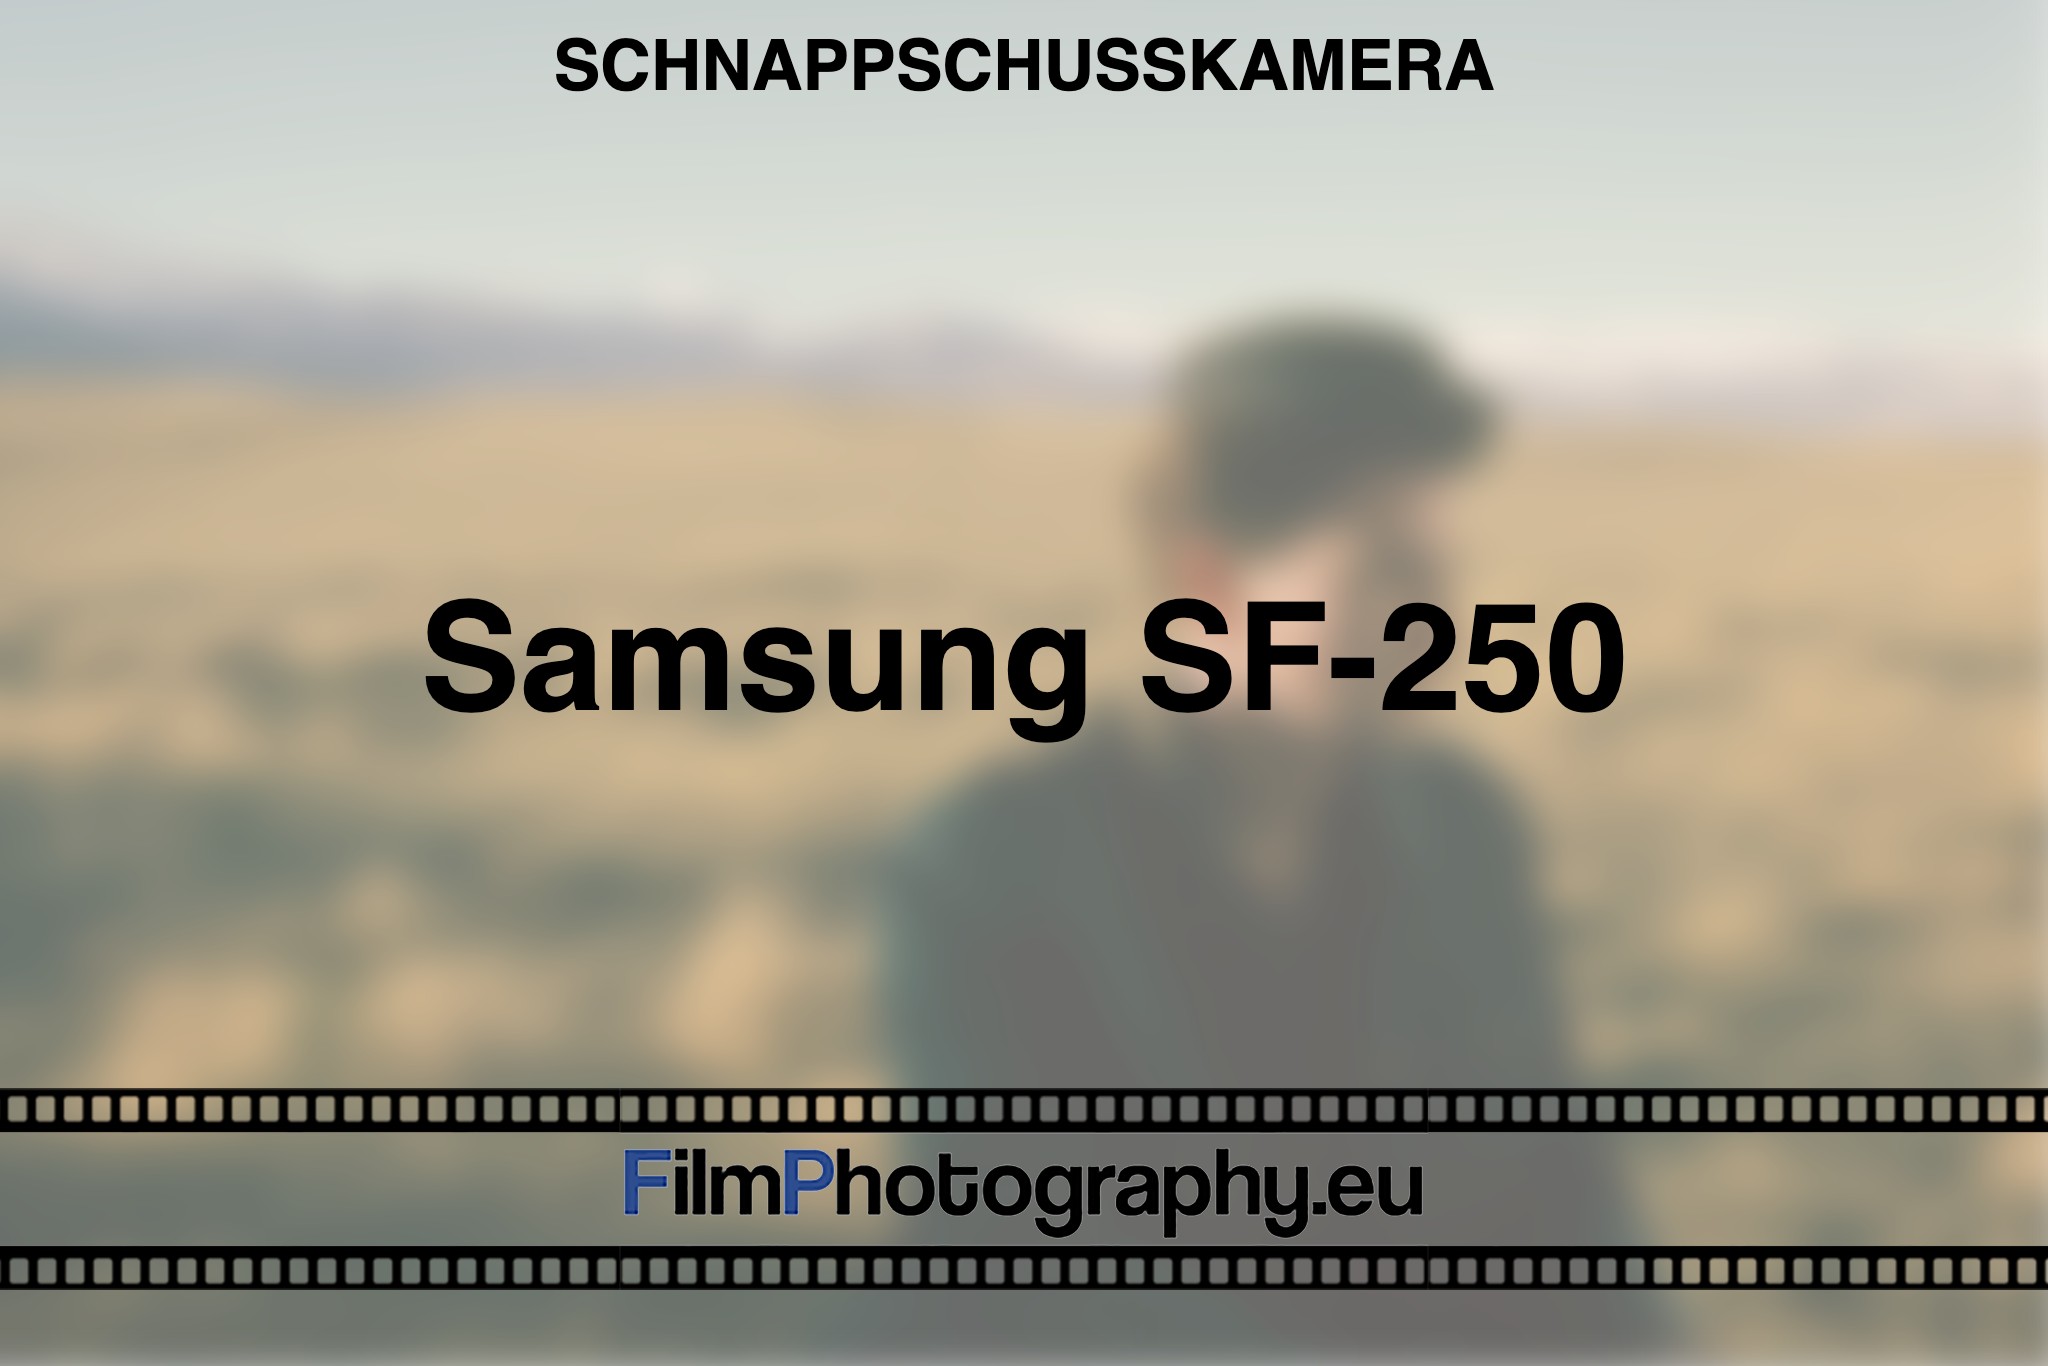 samsung-sf-250-schnappschusskamera-bnv